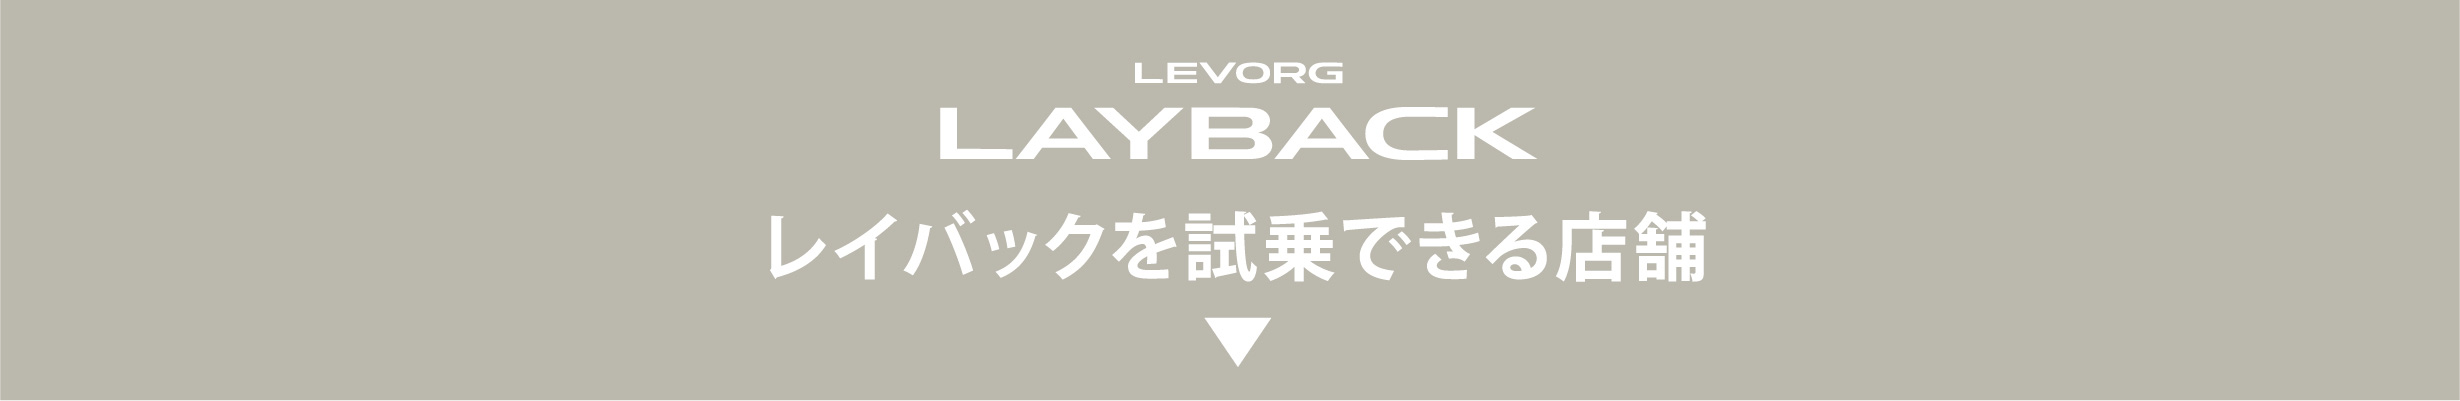 北海道スバル LEVORG LAYBACK レイバックを試乗できる店舗